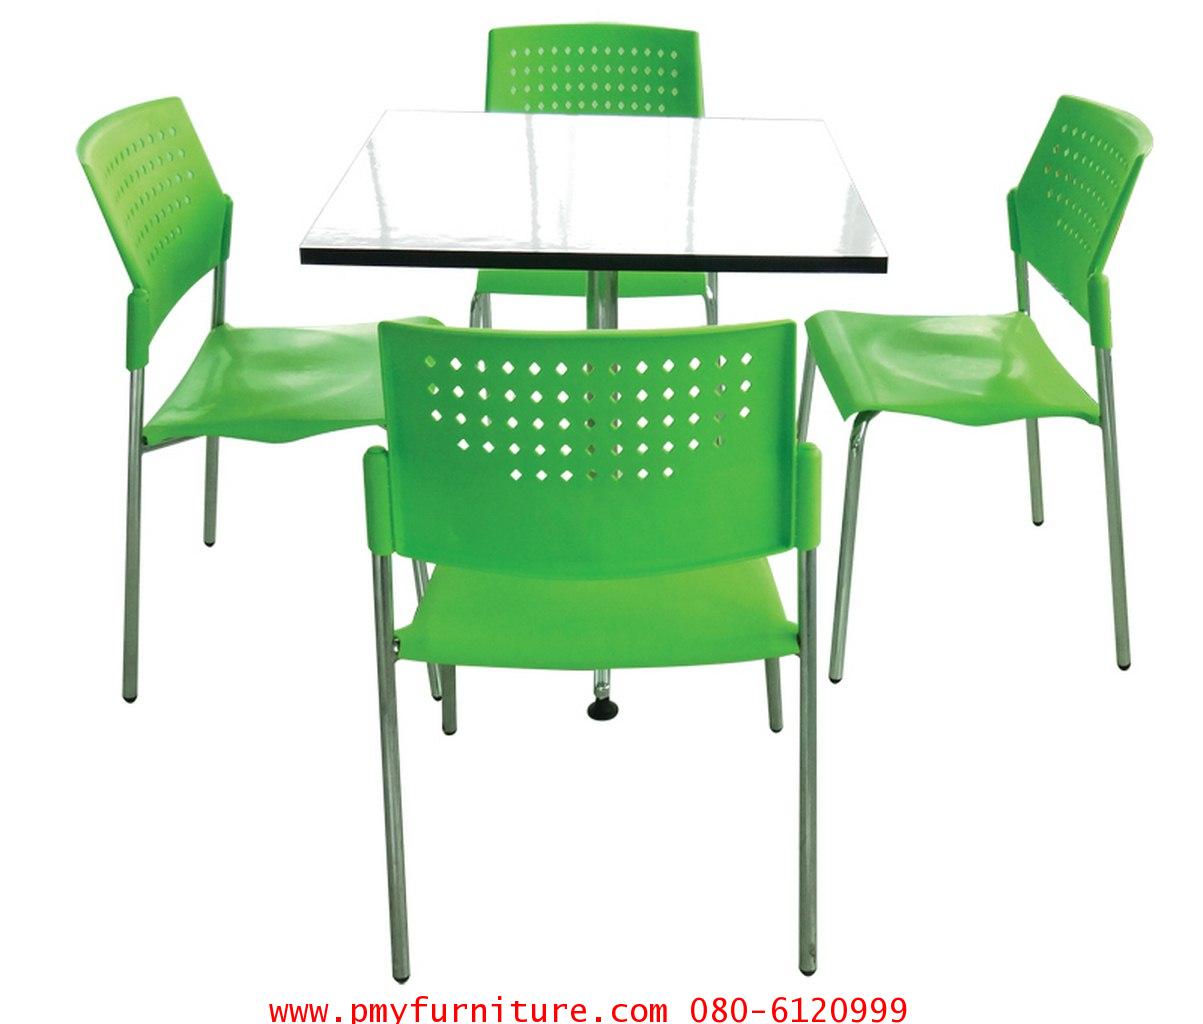 pmy6-6 ชุดโต๊ะเก้าอี้ STB 215-1